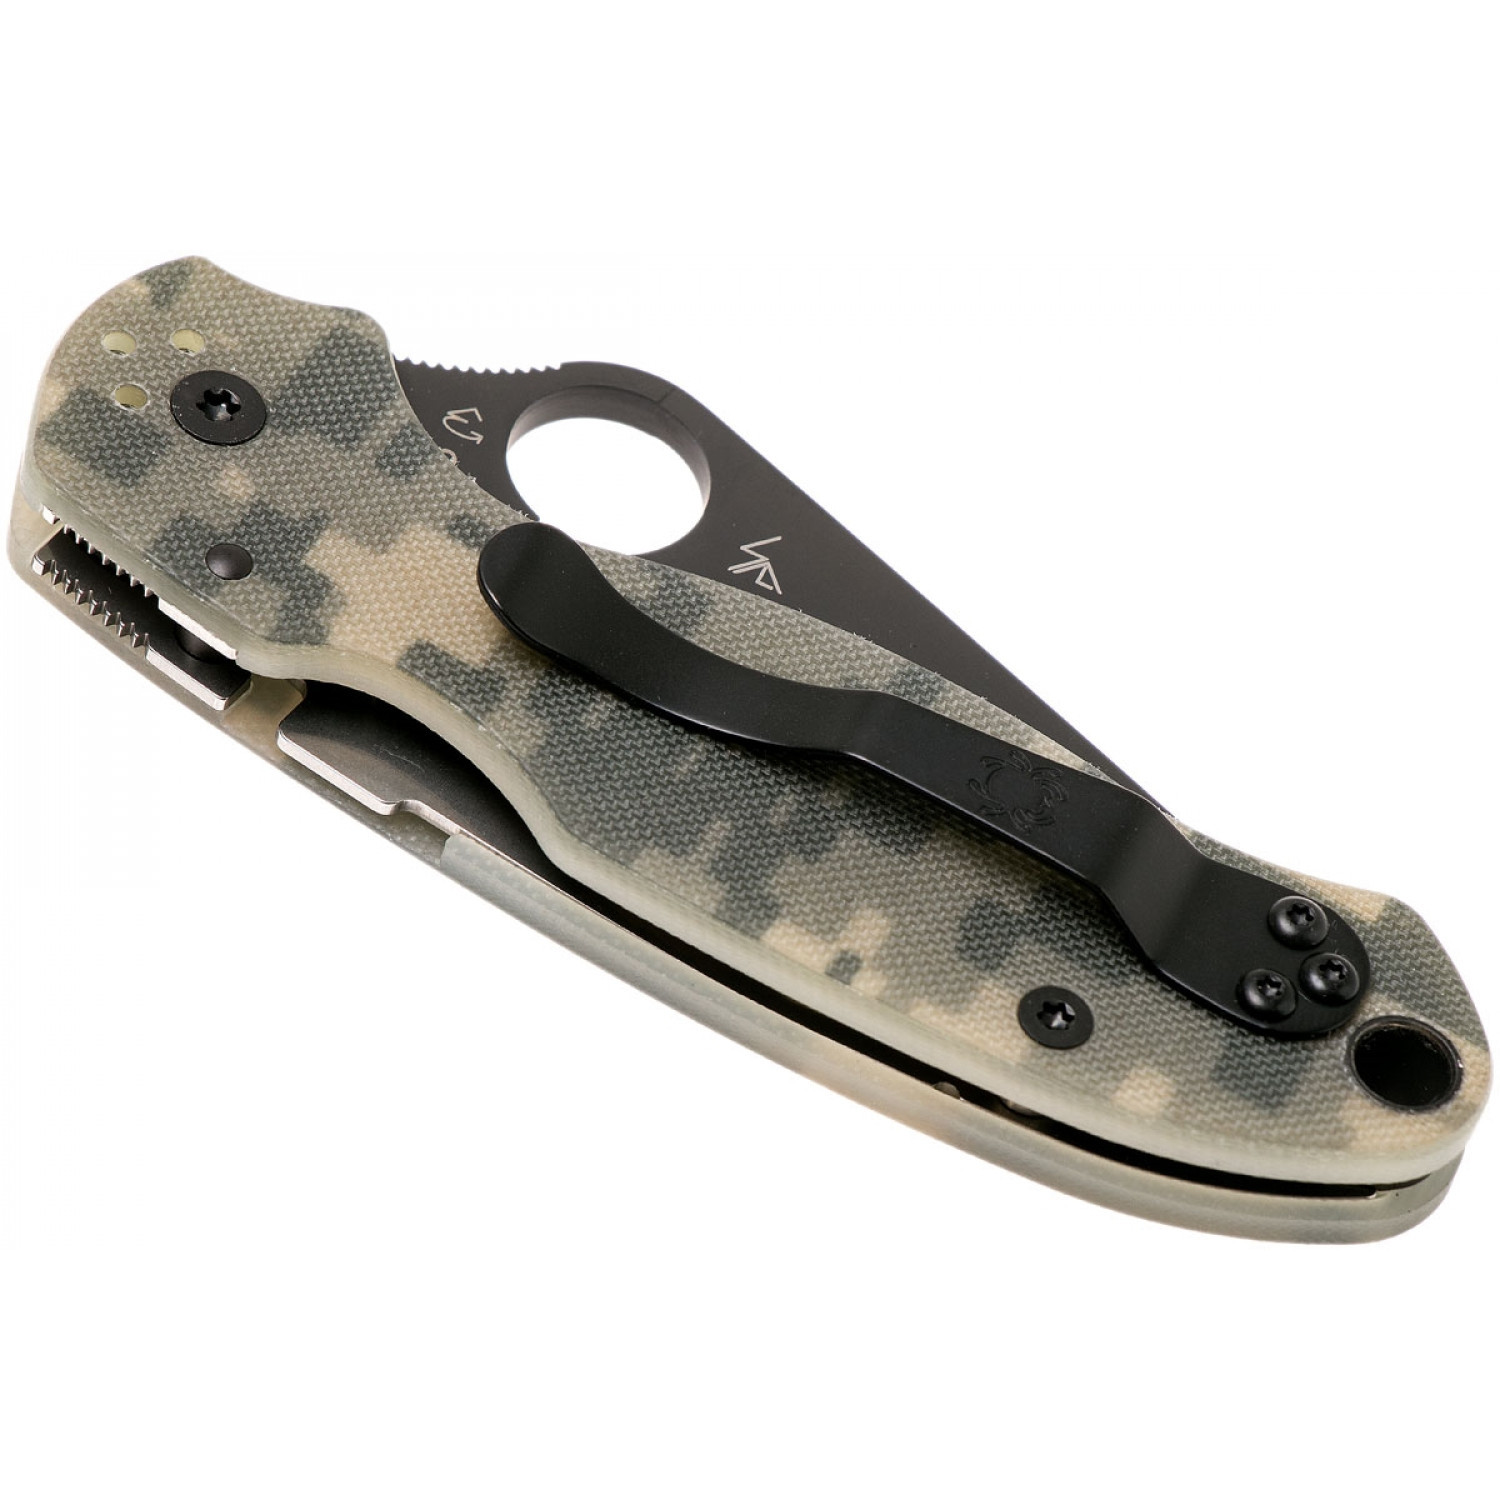 Нож складной Para 3 - Spyderco 223GPCMOBK, сталь Crucible CPM® S30V™ Black DLC Coated Plain, рукоять стеклотекстолит G10, цифровой камуфляж (Digi Camo) - фото 4